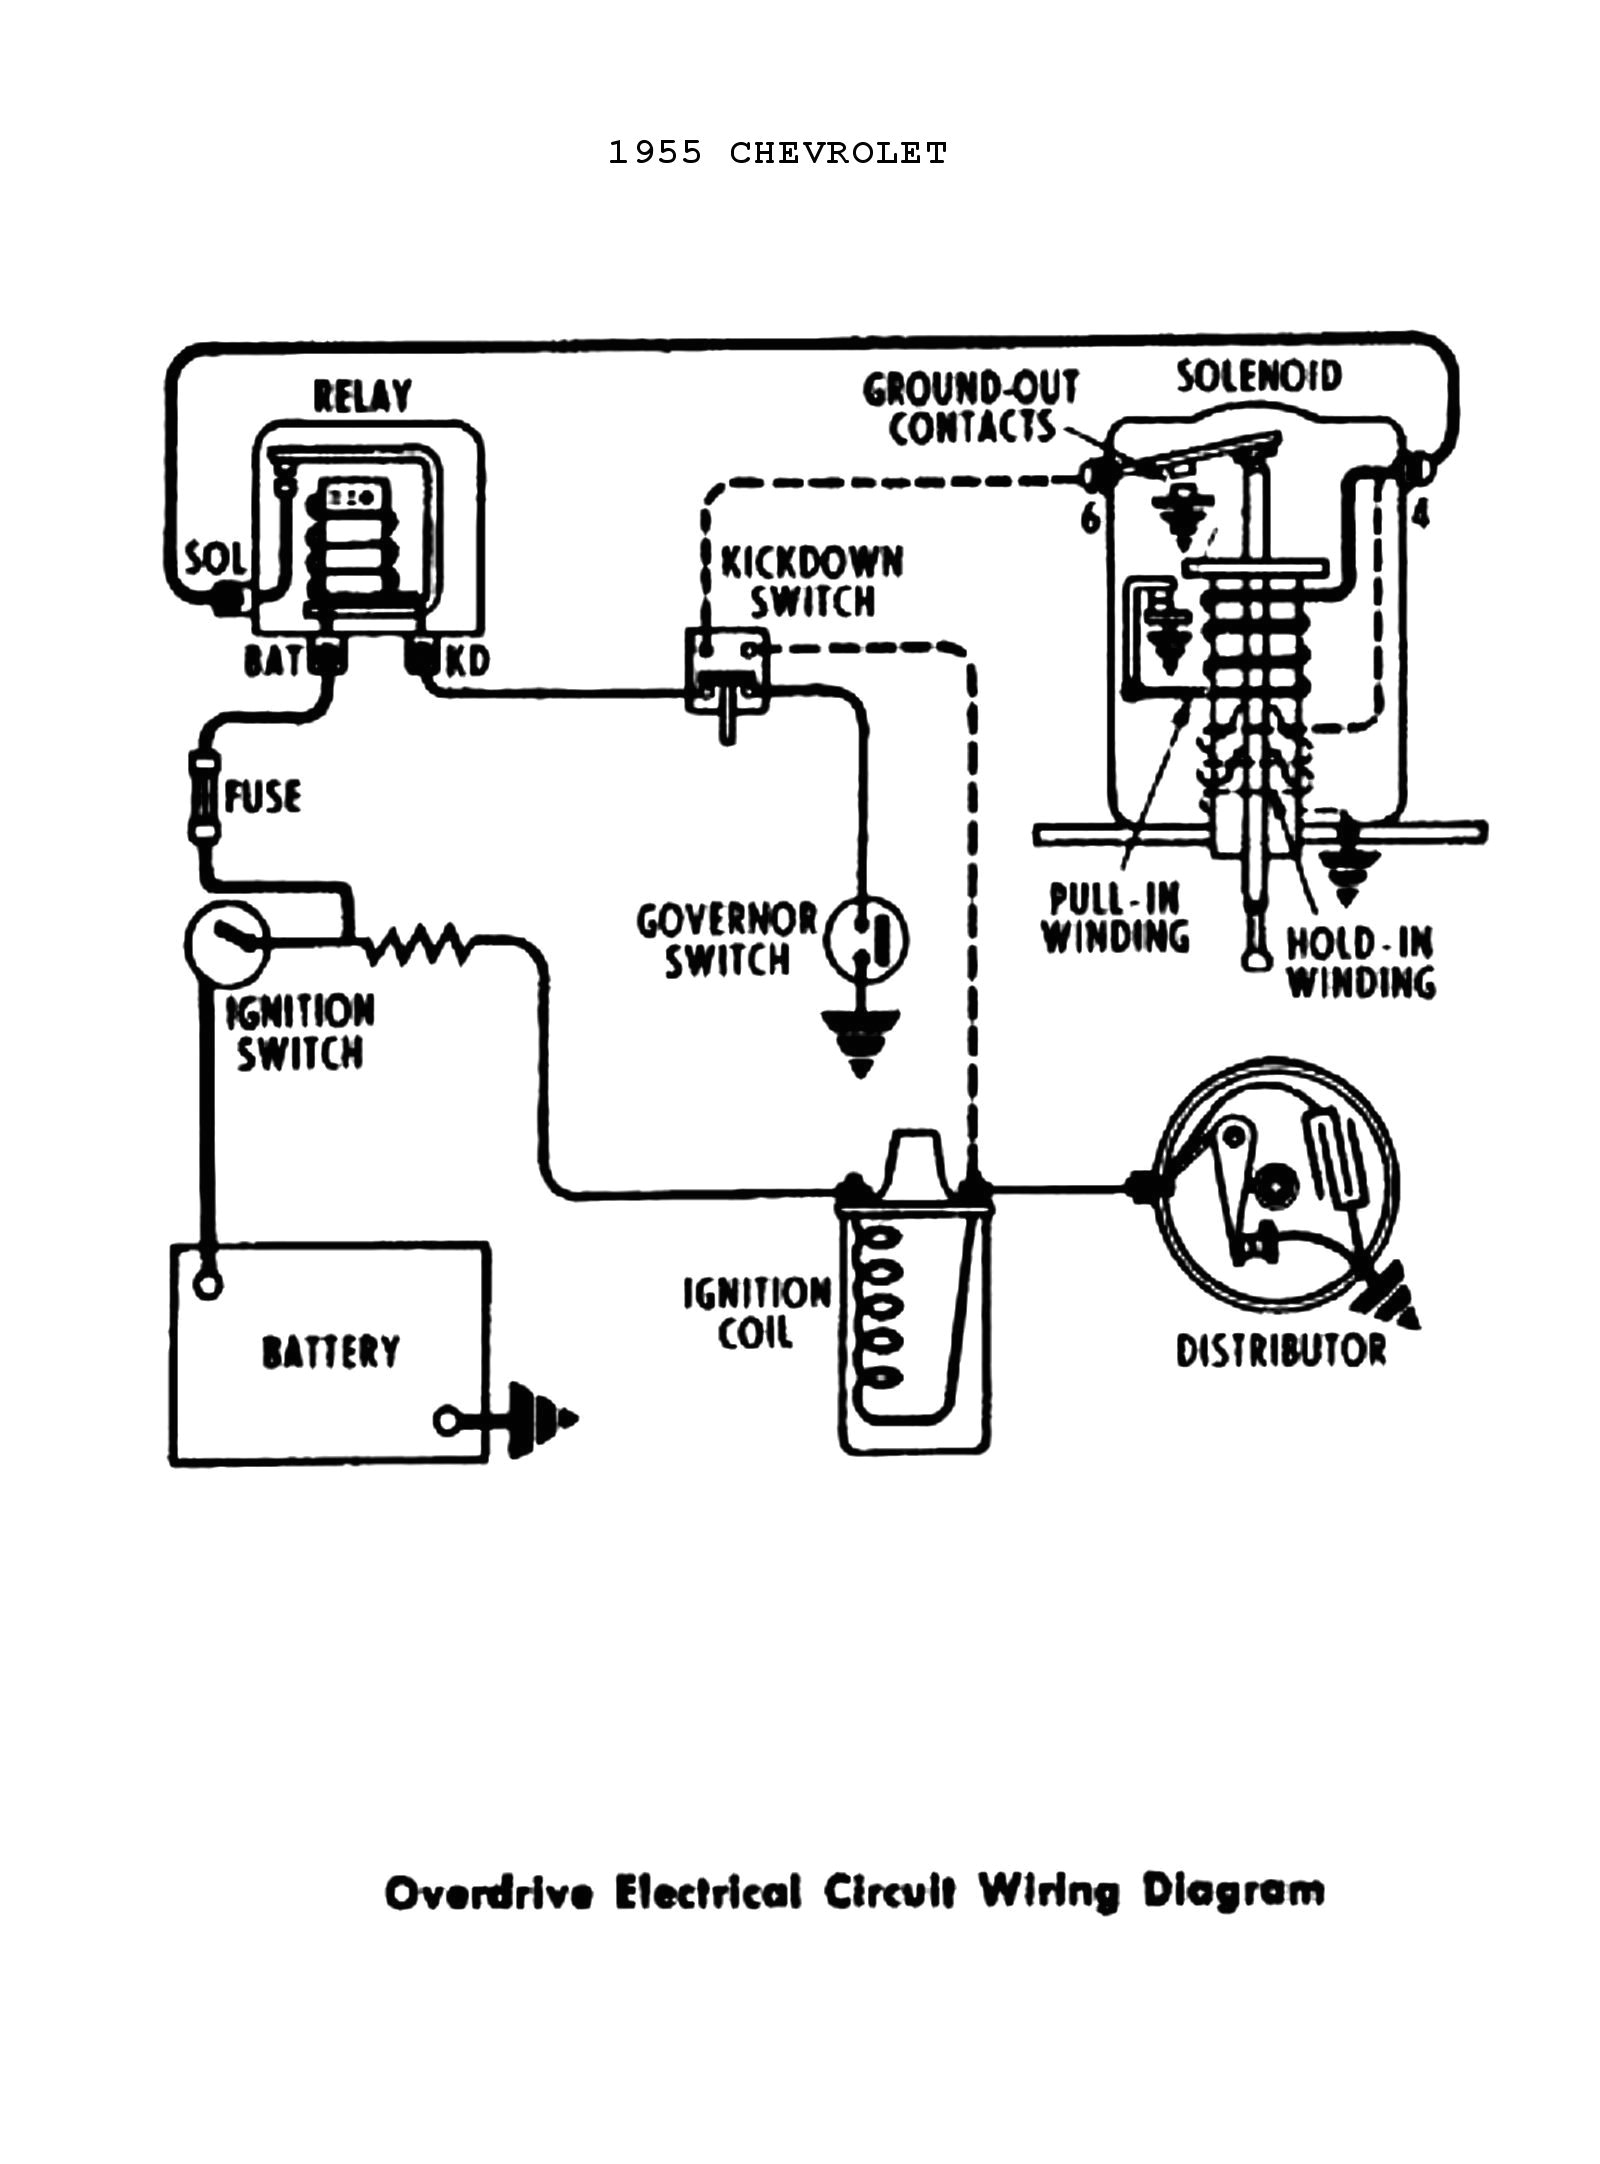 sbc distributor points wiring diagram free download wiring diagram ford points ignition diagram wiring diagram database